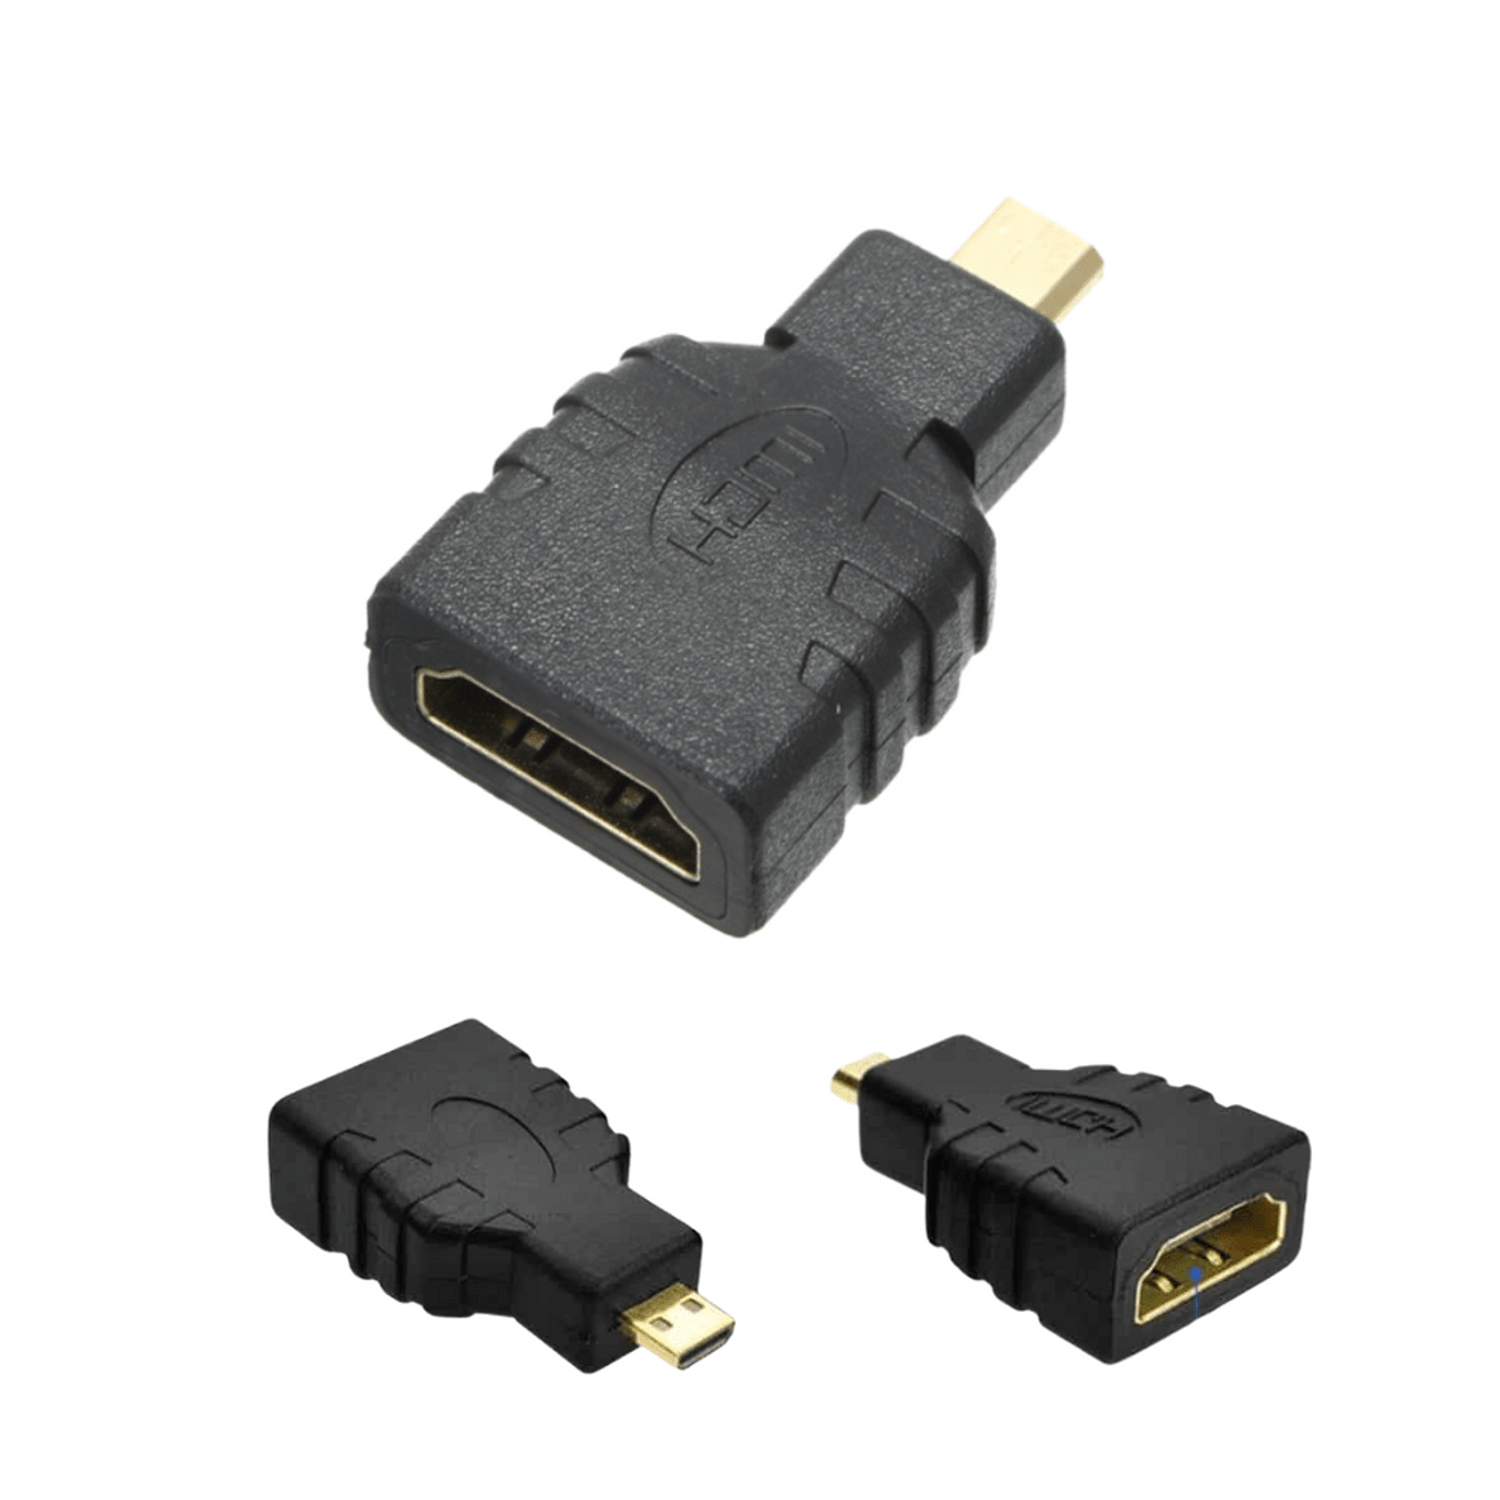 Cable Convertidor Adaptador Micro HDMI a HDMI HD 1.5 Metros